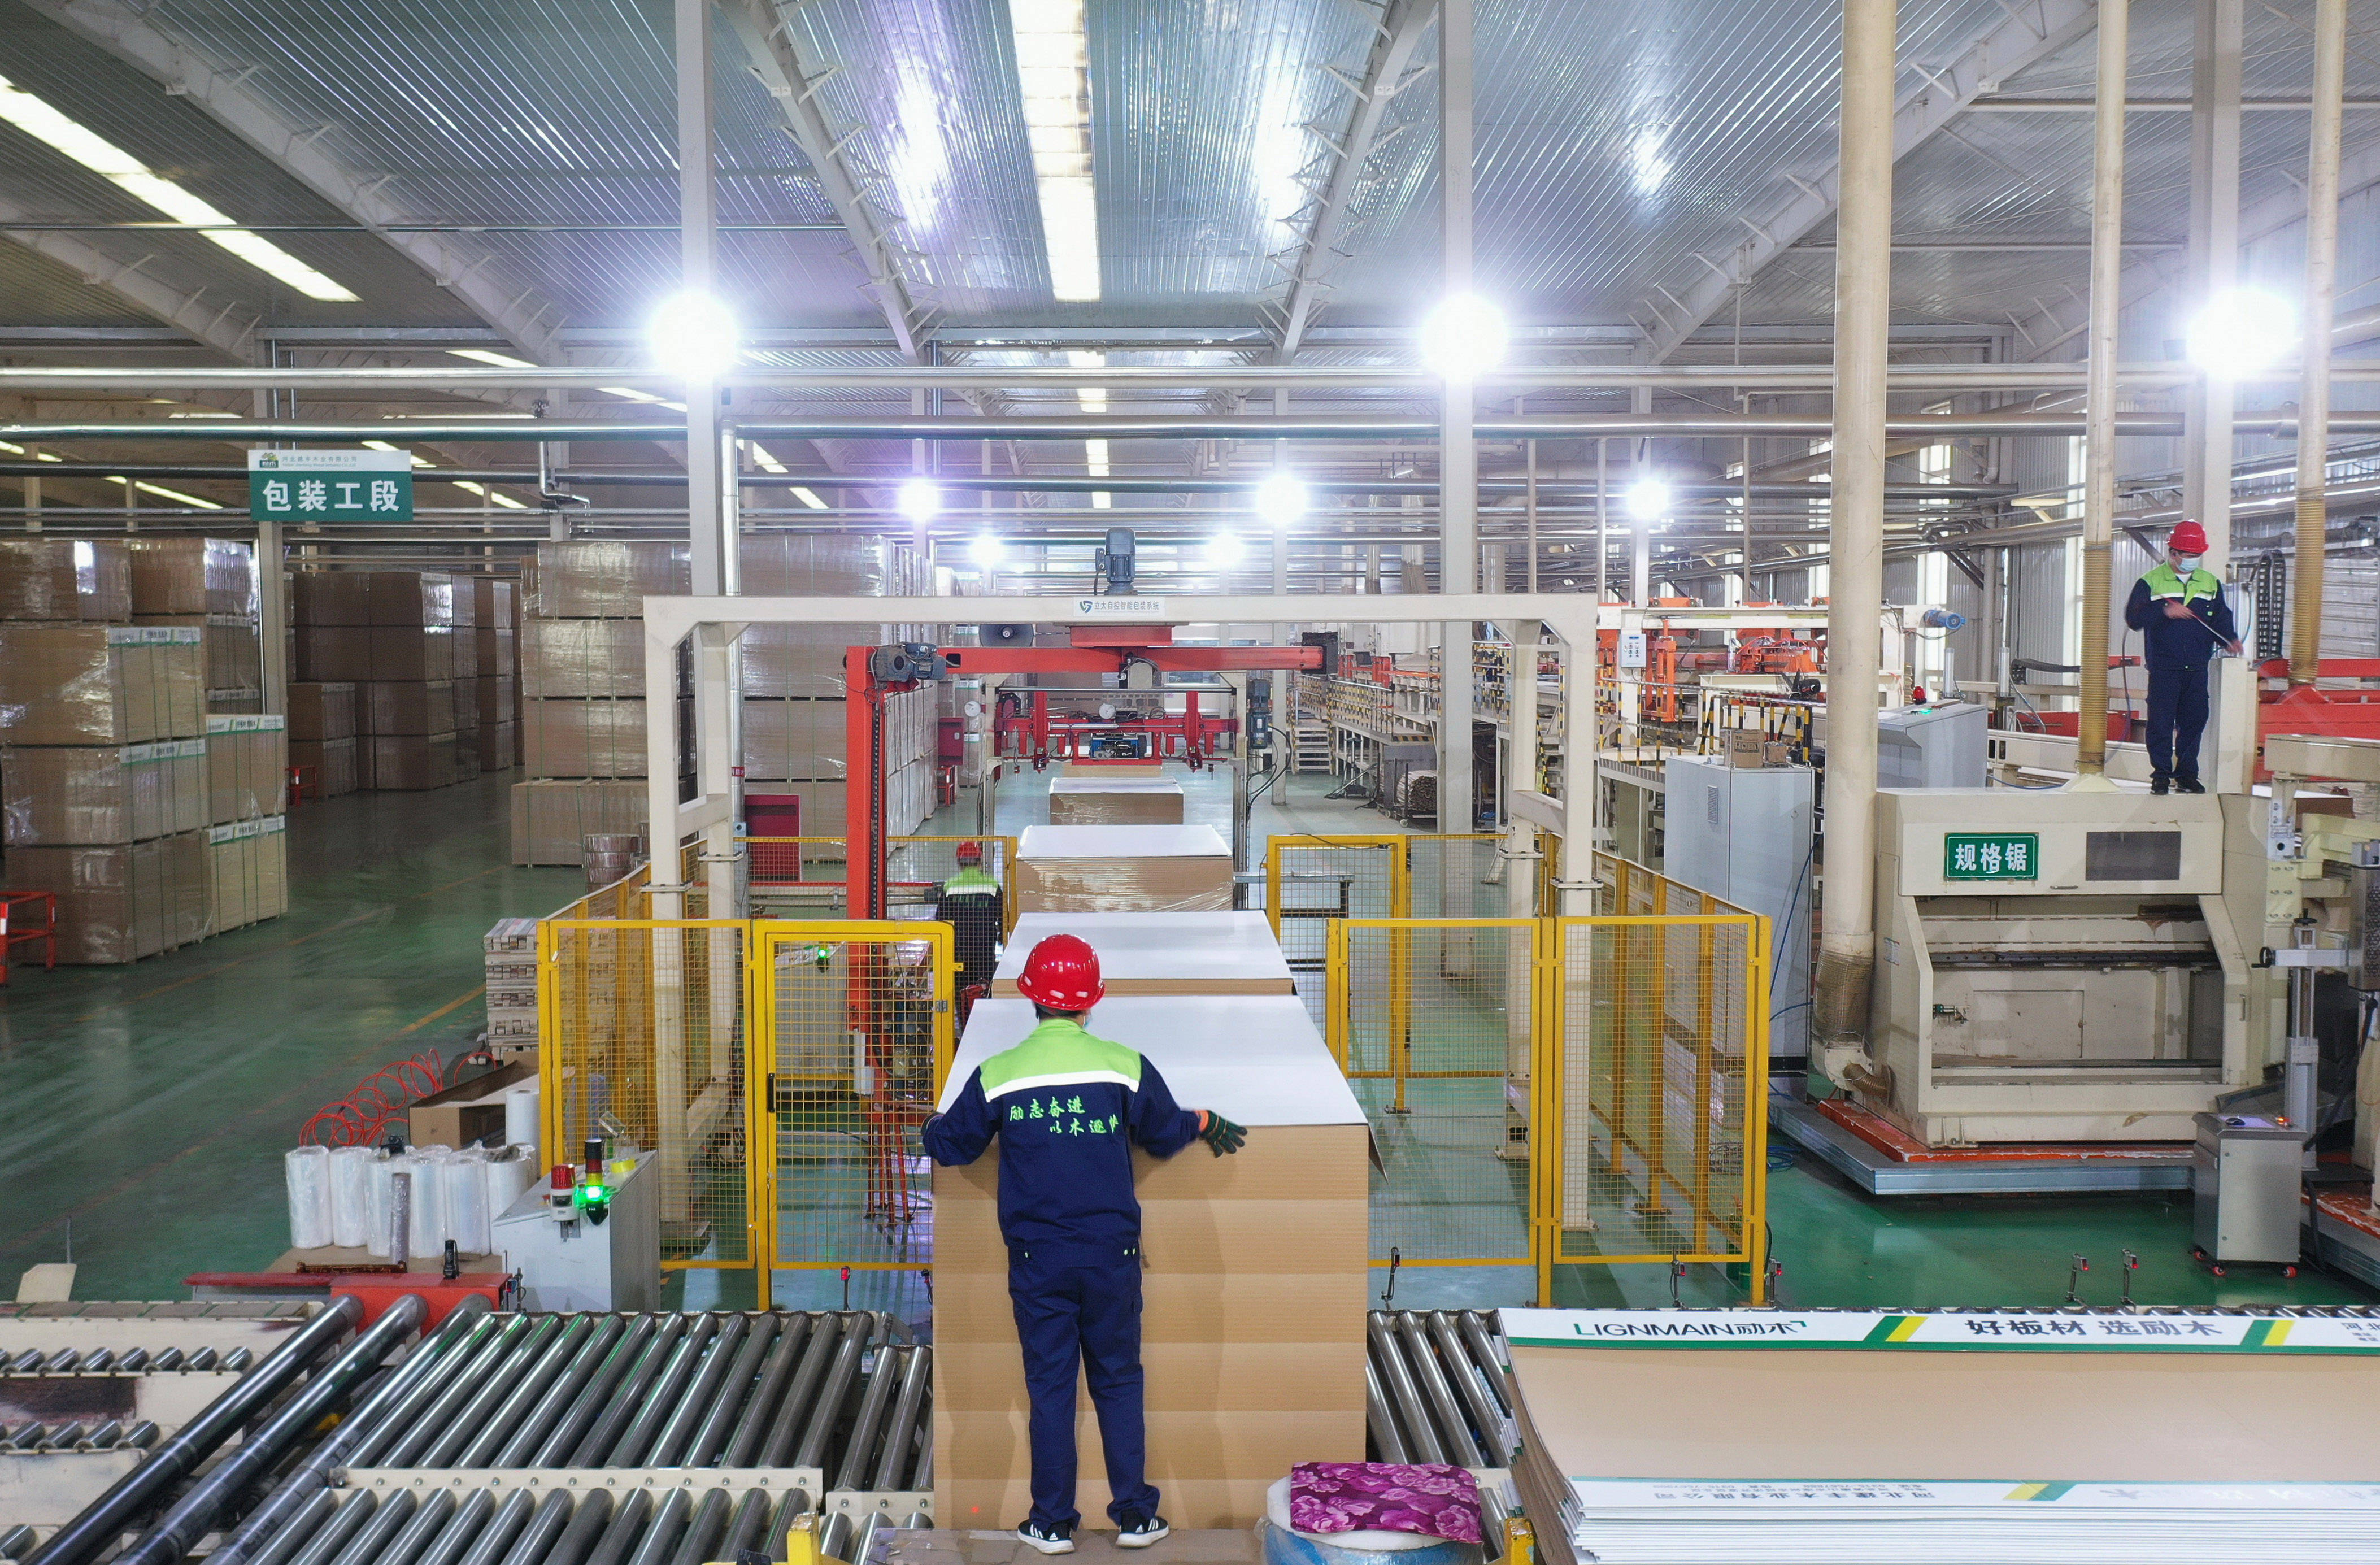 4月30日,滦州市东安各庄镇一家板材企业的工人在生产线上工作